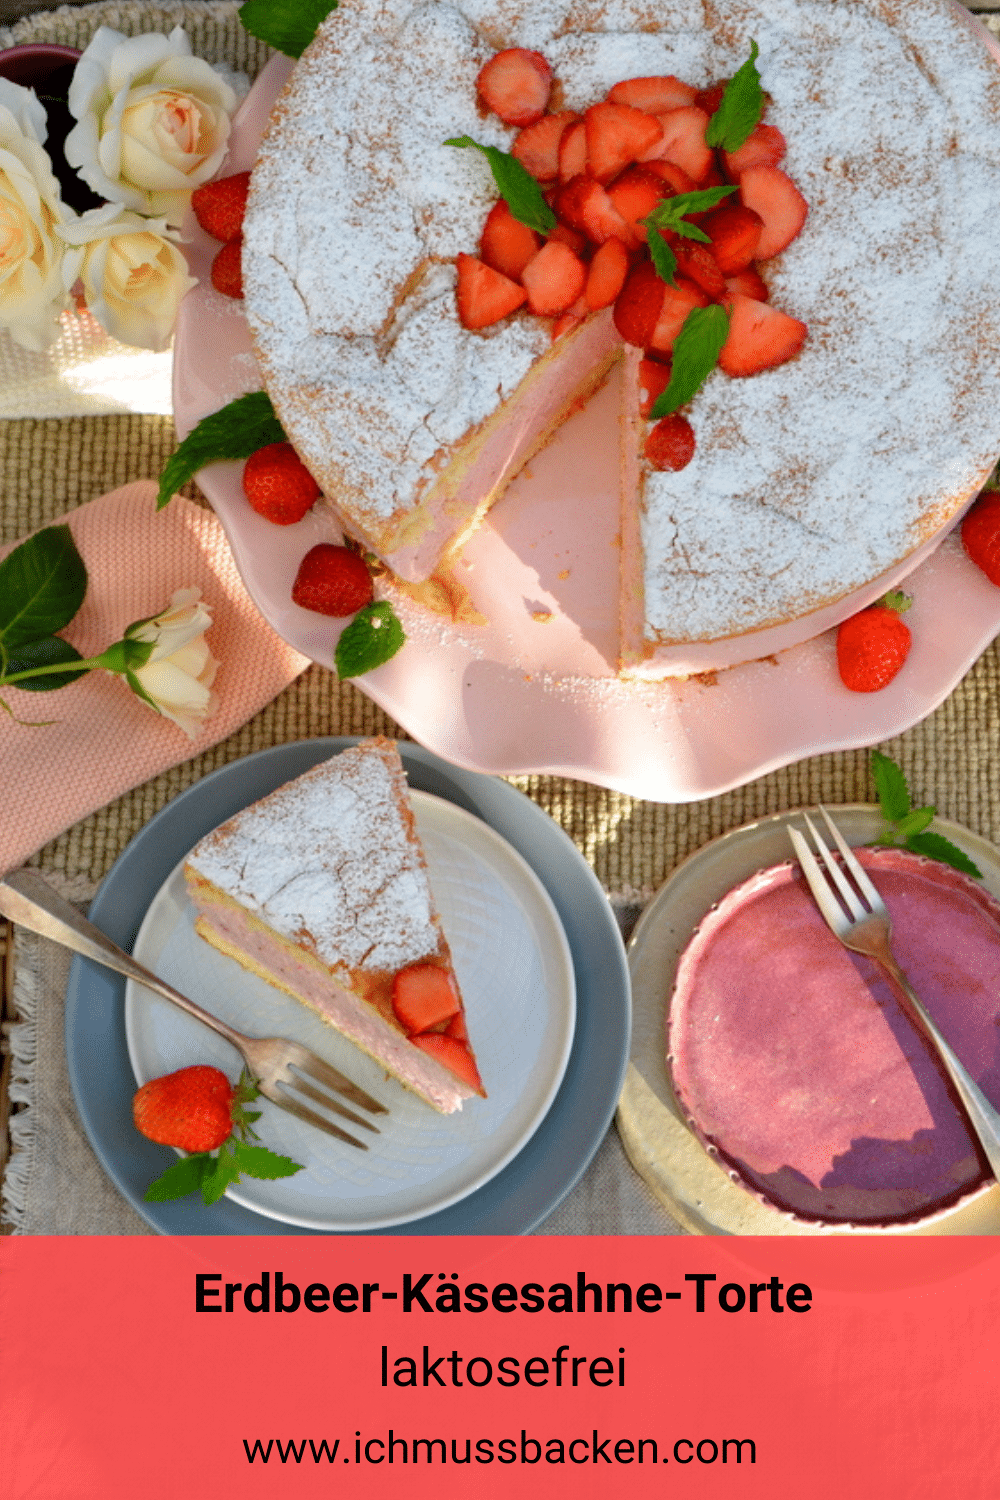 https://ichmussbacken.com/2020/07/21/cheesecake-brownies-mit-kirschen/